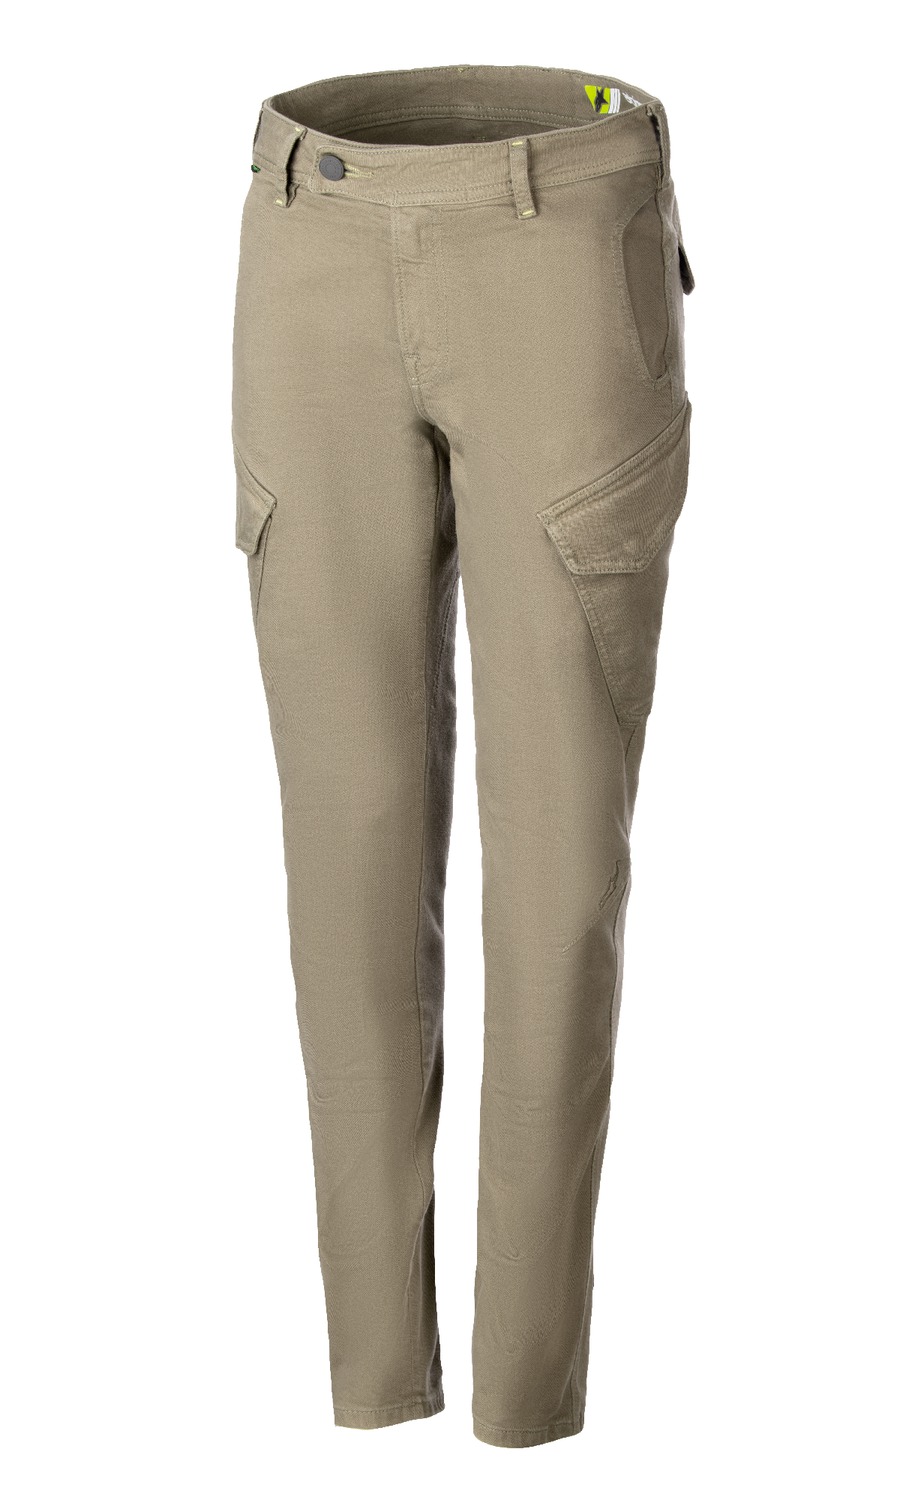 kalhoty CALIBER TECH, ALPINESTARS, dámské (zelená) 2024